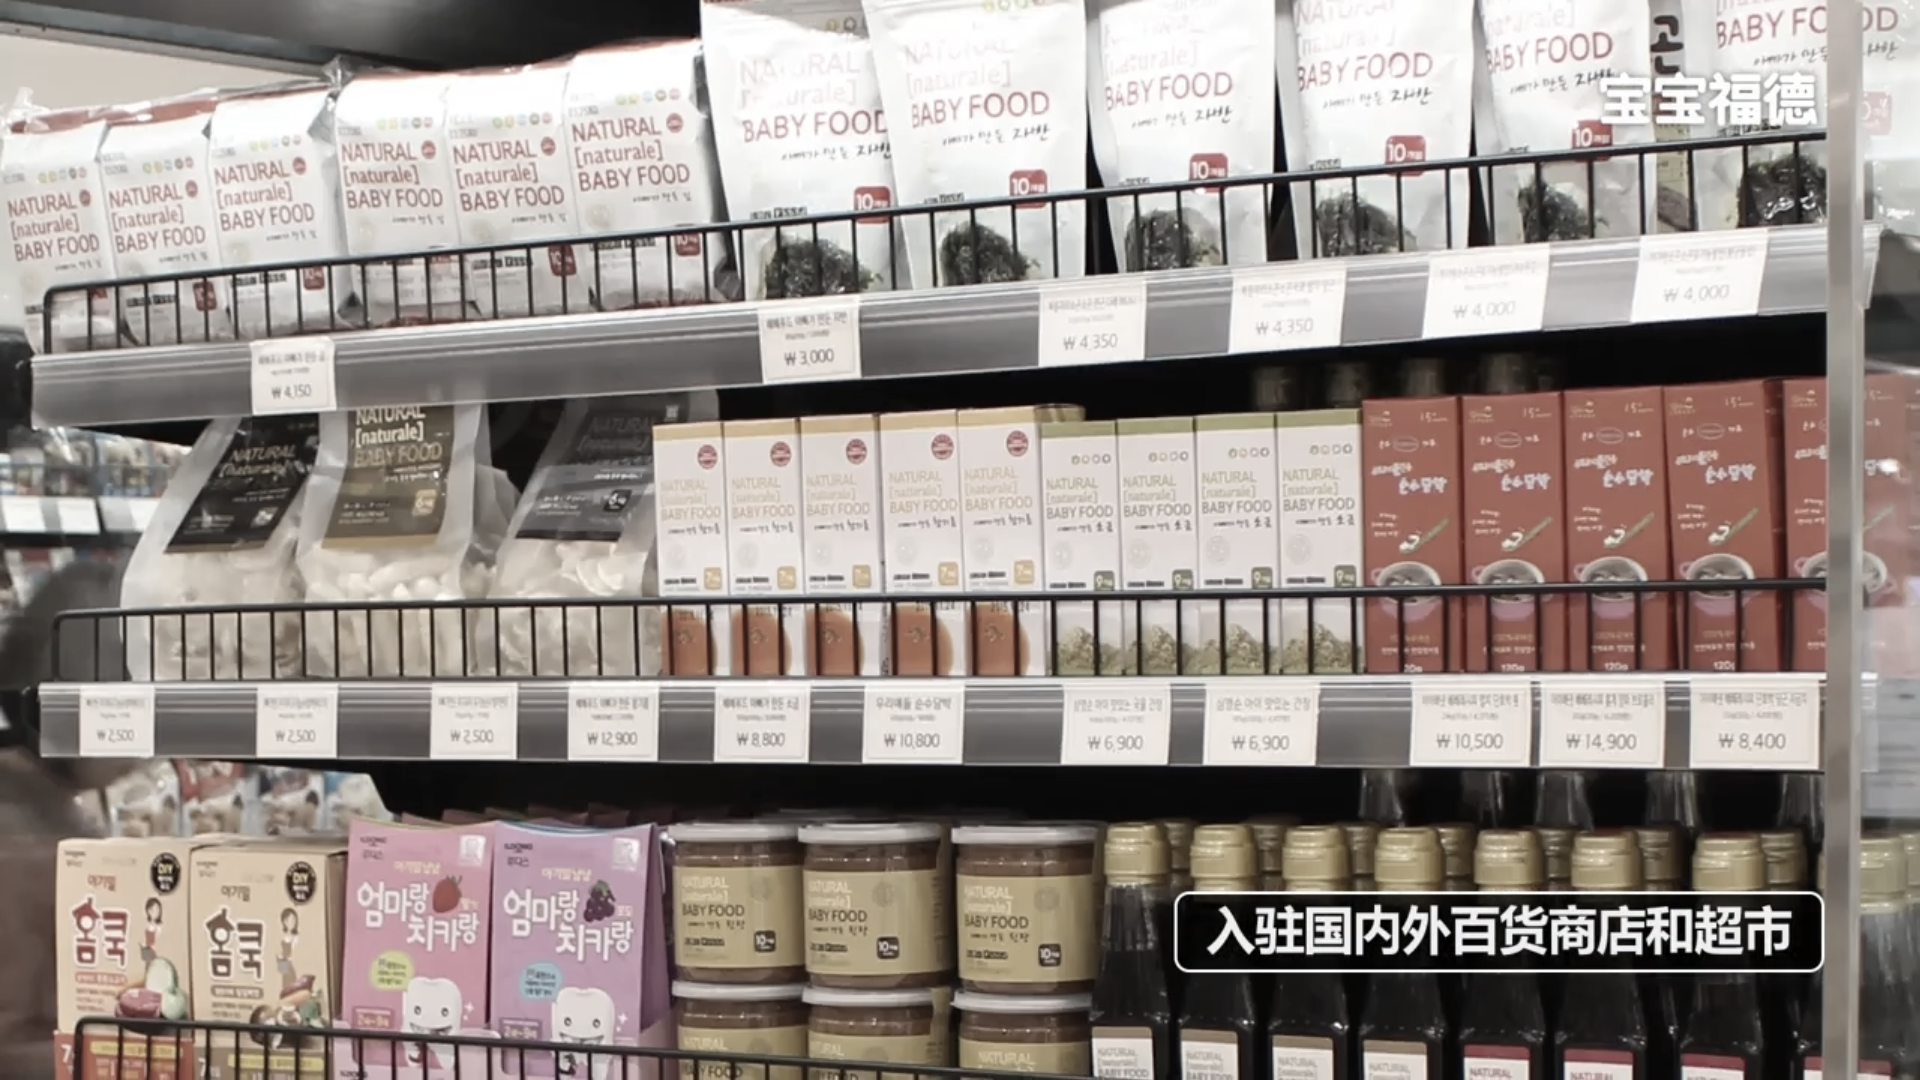 宝宝福德 韩国儿童食品 产品介绍视频